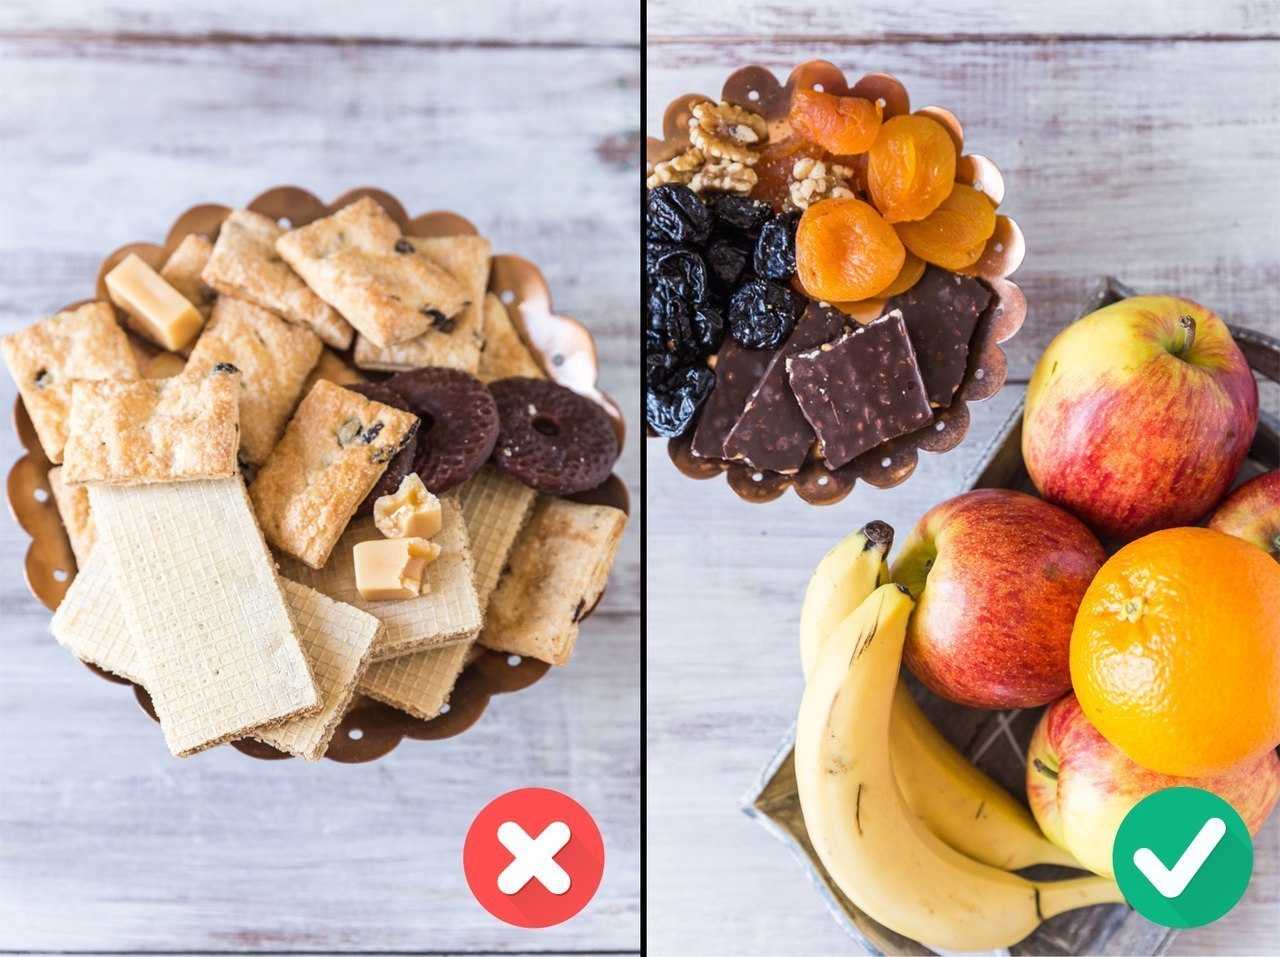 В статье про полезные сладости развенчиваем мифы, связанные с сахаром и его употреблением Разбираемся в полезных сладостях, которые можно есть тем, кто следит за фигурой